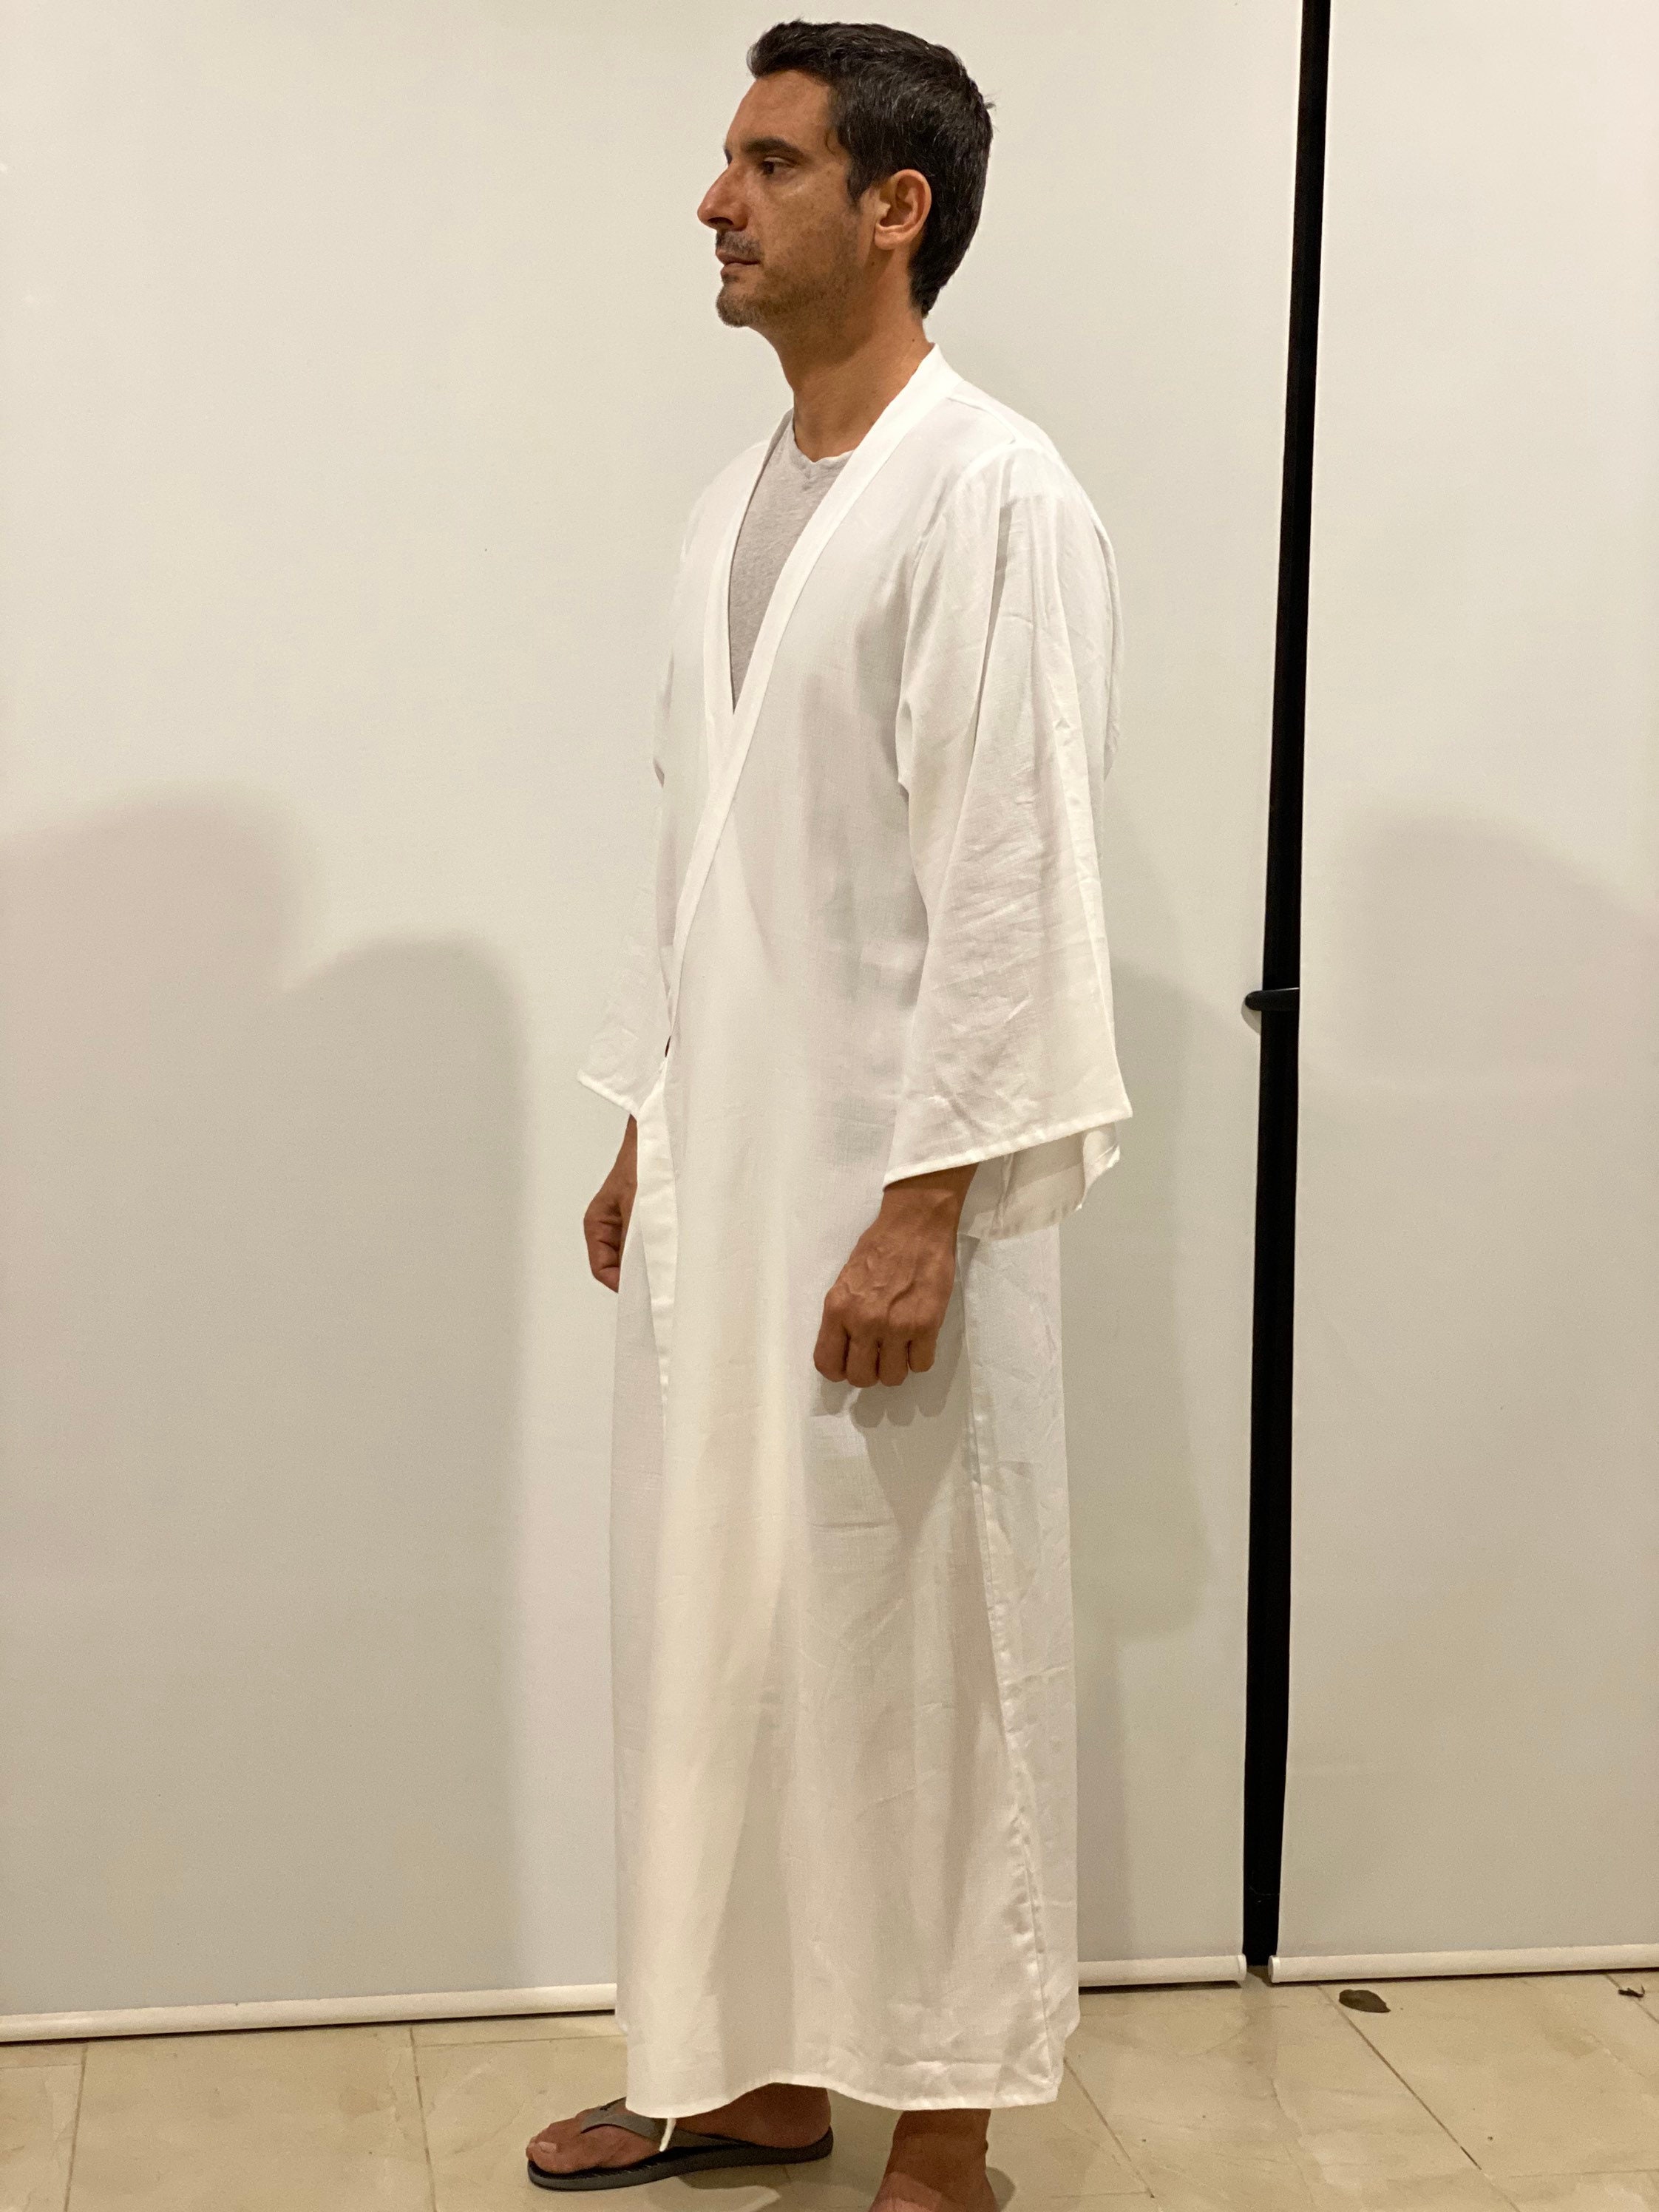 White Dragon kimono man / man kimono robe / white kimono man / | Etsy